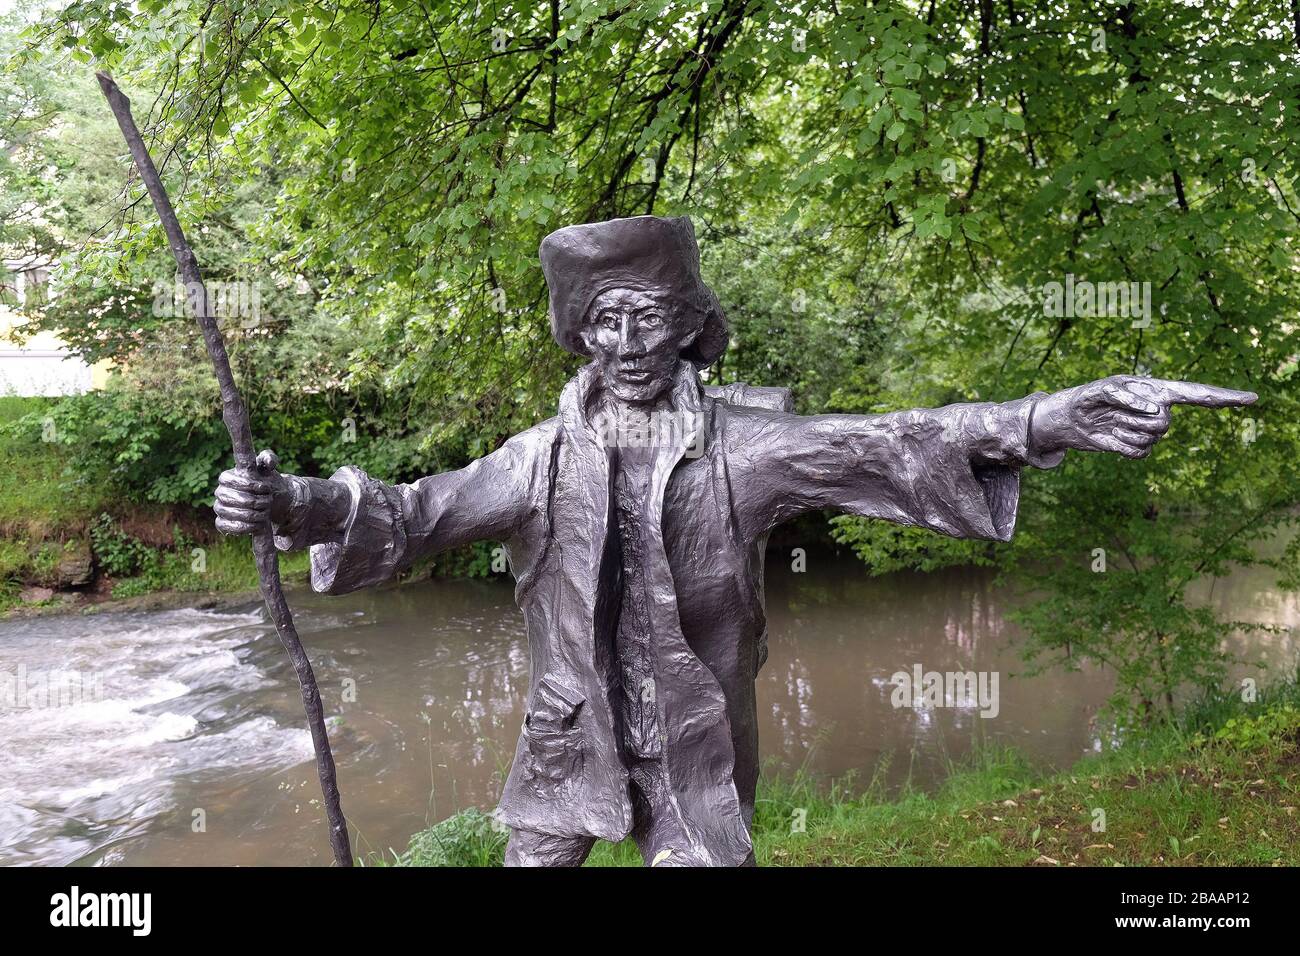 Pilgrim to Santiago de Compostela statue by Sieger Koder in Wasseralfingen, Germany Stock Photo